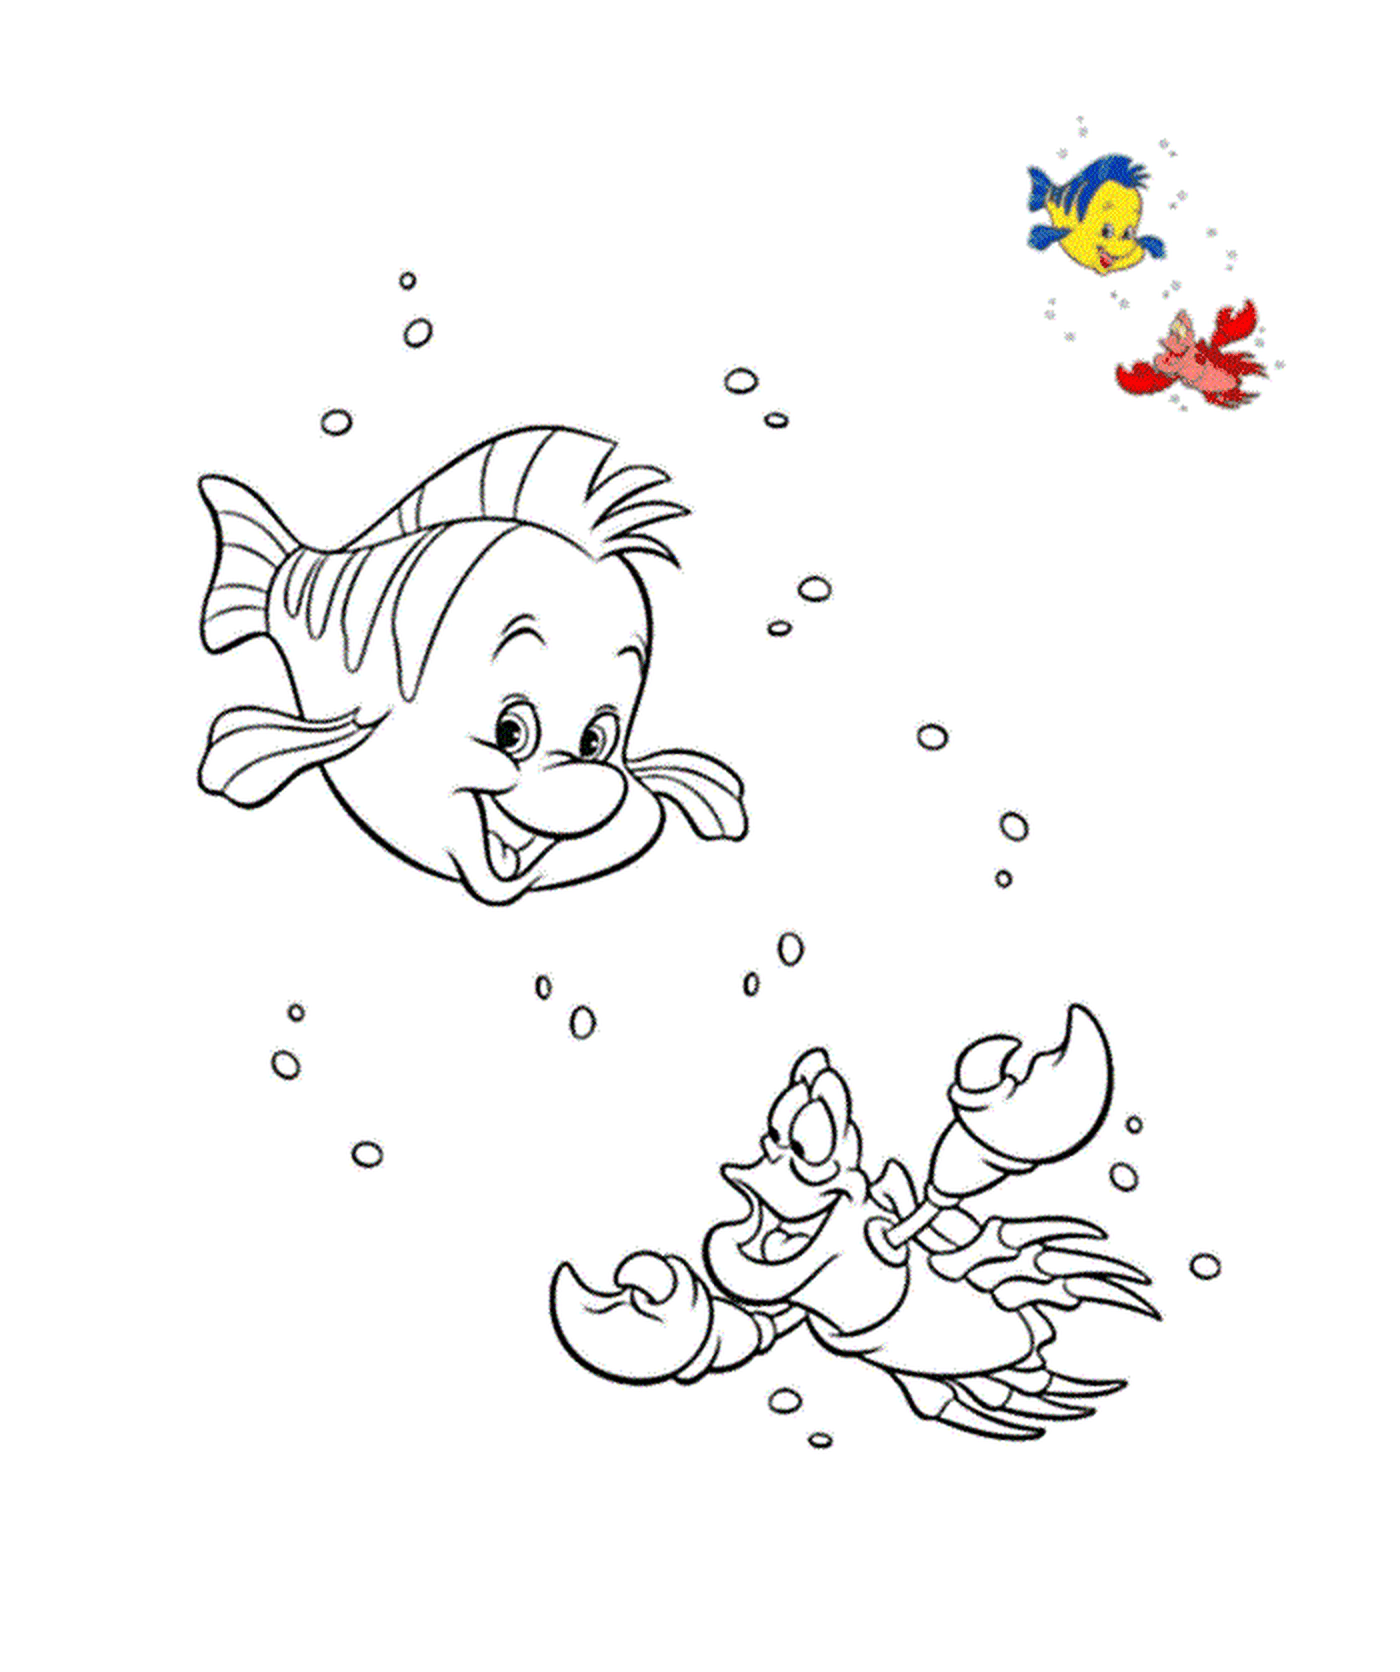  Um peixe e um pato nadando na água 